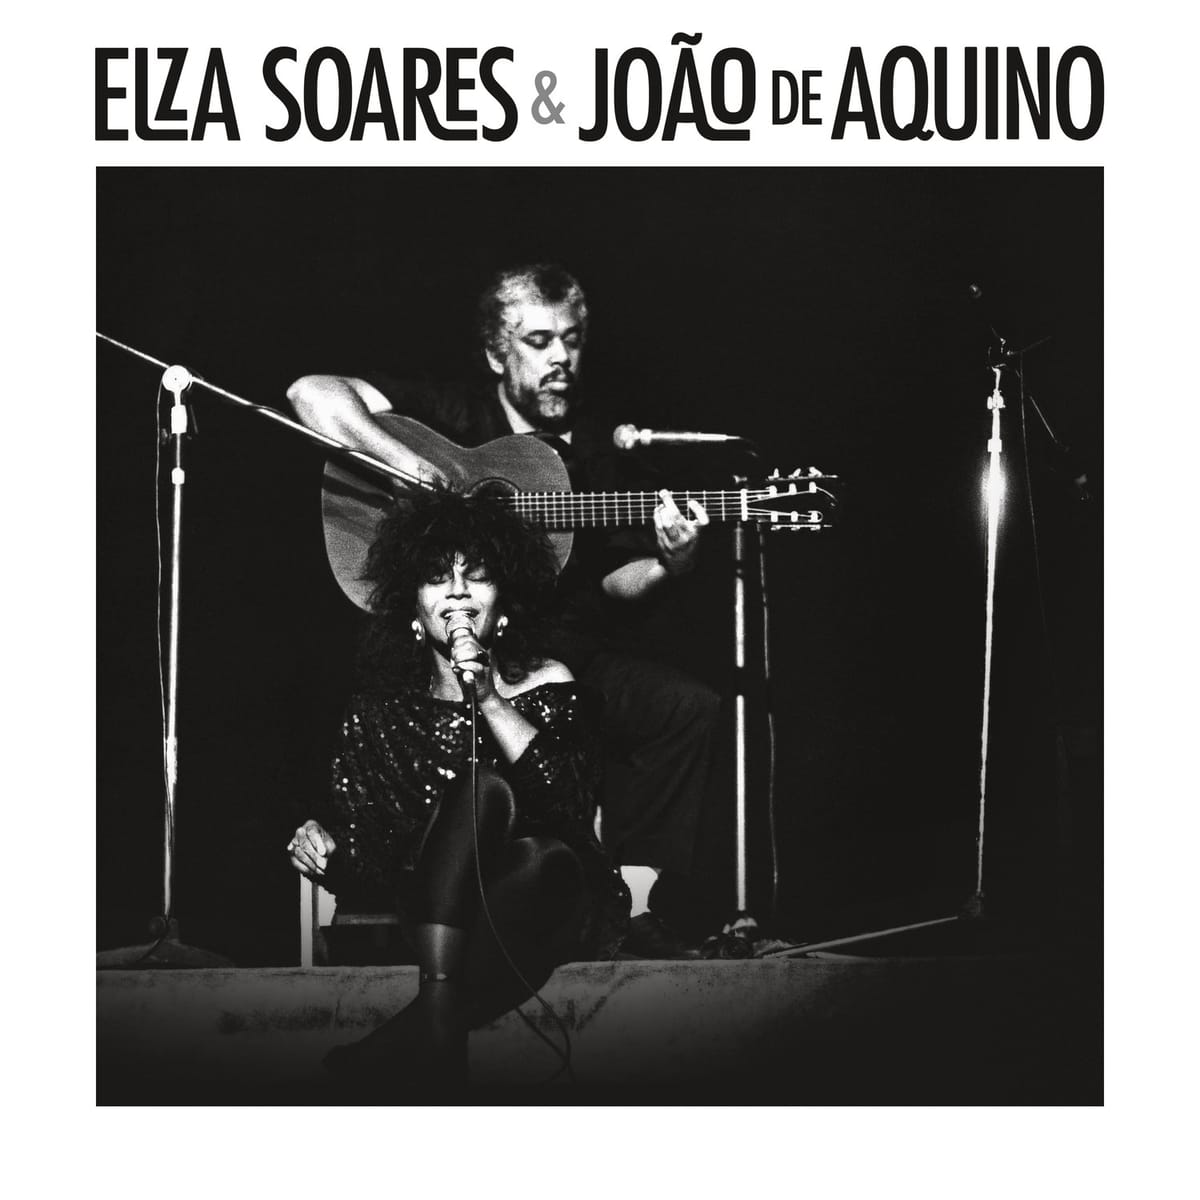 Elza Soares & João de Aquino: Elza Soares & João de Aquino